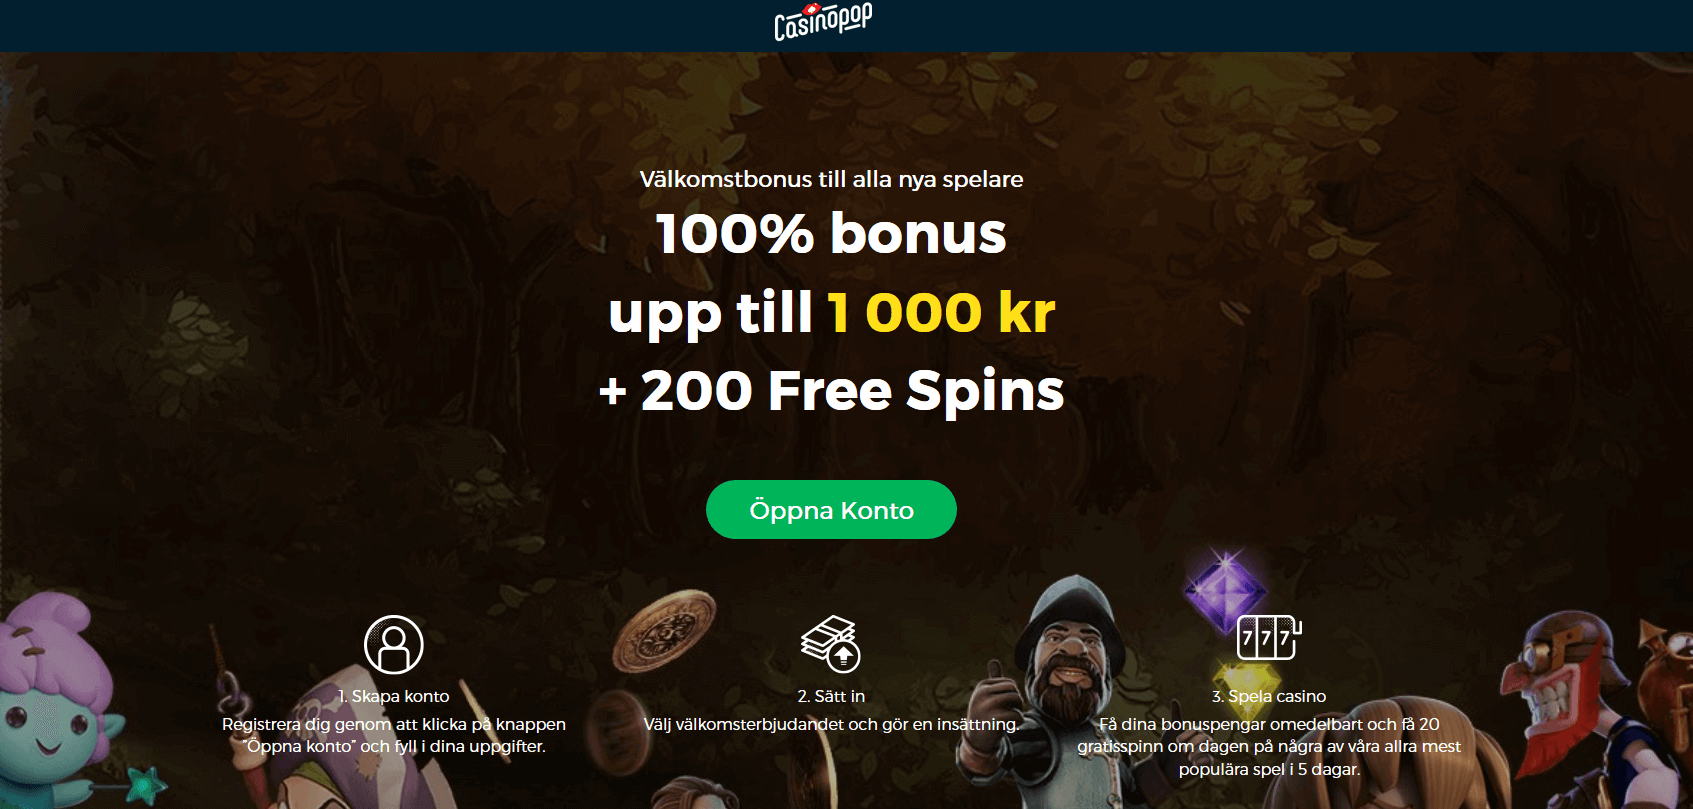 CasinoPop Bonusar 100%